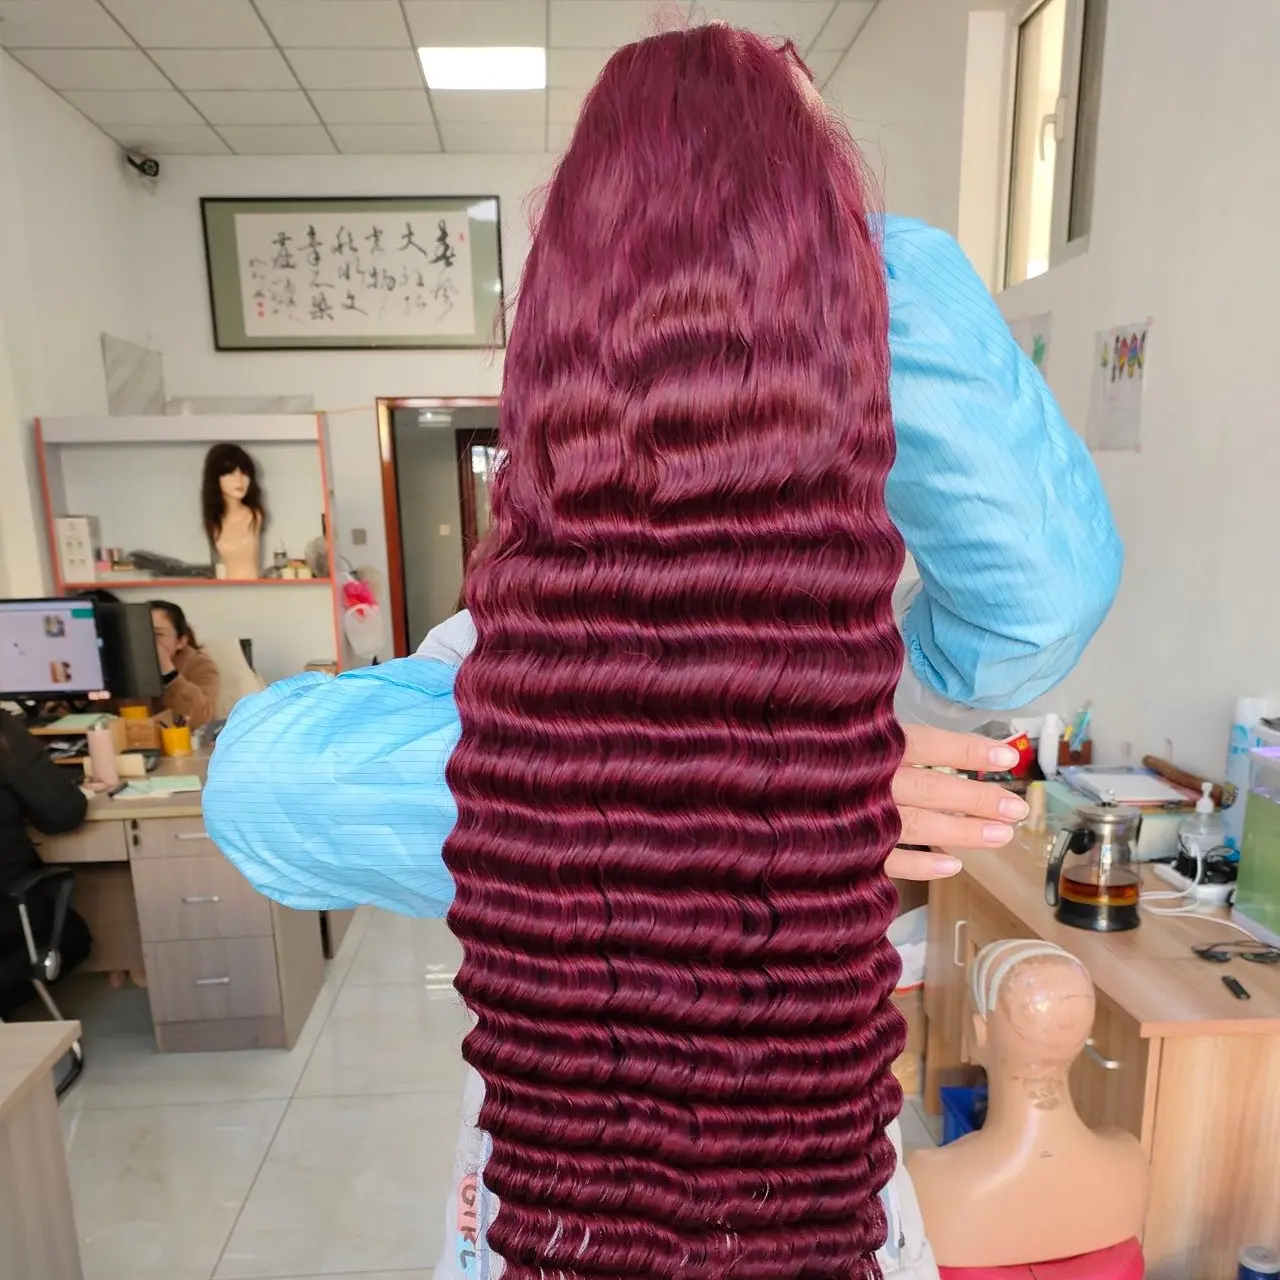 Amara vermelho onda profunda perucas cru vietnamita hd laço frontal peruca onda profunda quente vermelho frente rendas perucas cabelo humano 180 densidade 13x4